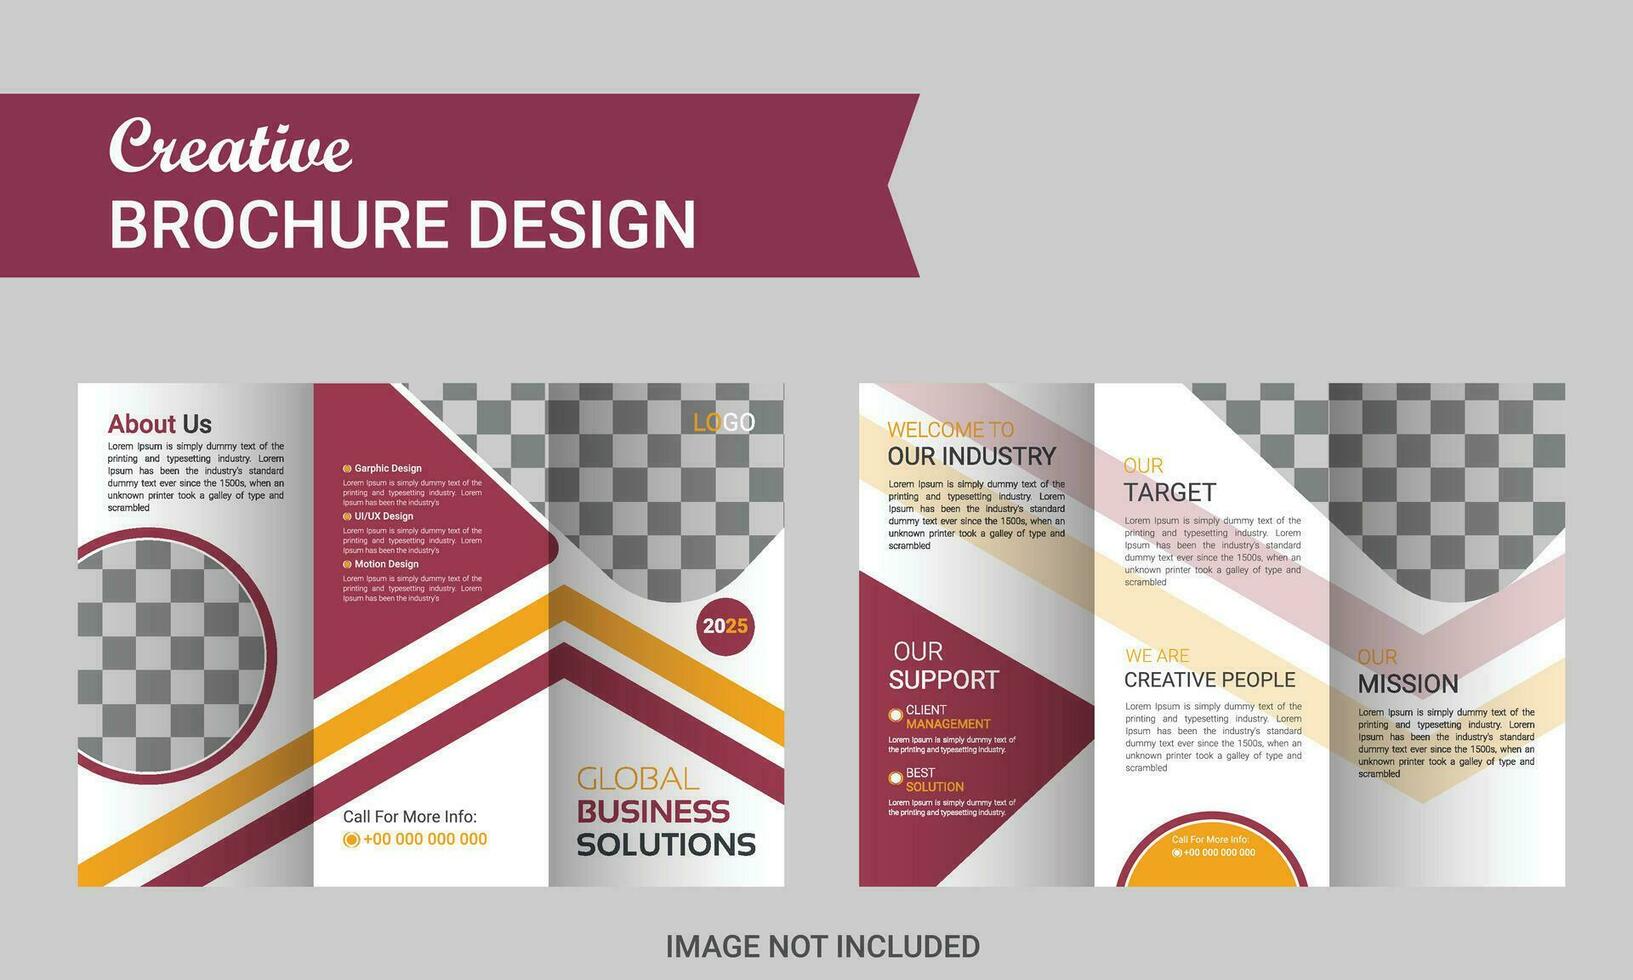 cubrir diseño modelo corporativo negocio anual reporte folleto póster empresa perfil catalogar revista volantes folleto folleto. vector